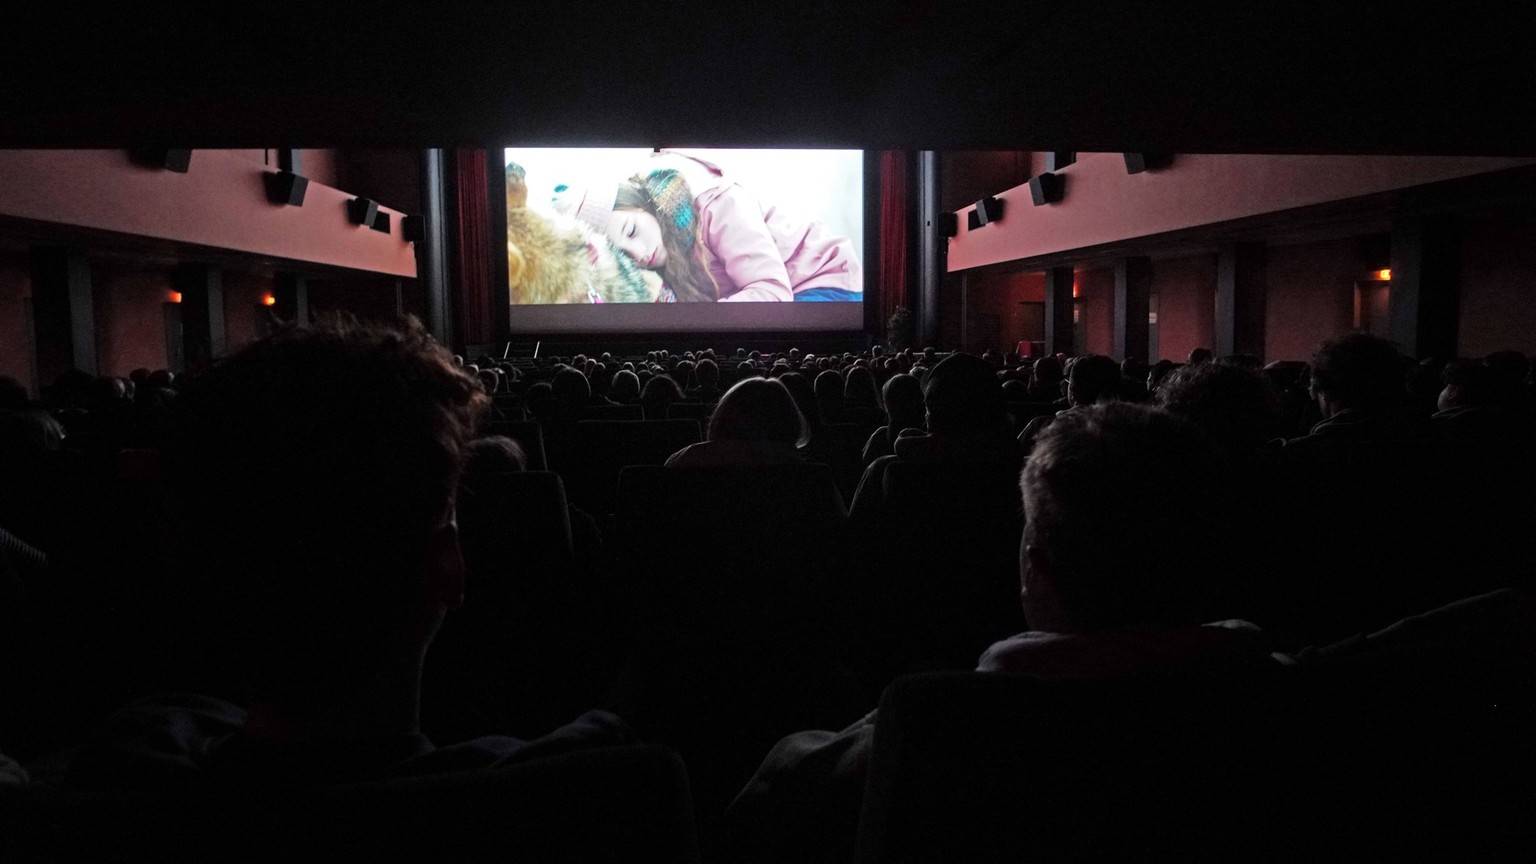 schweizer kinosäle wieder voller – eintritte aber noch immer unter vor-pandemie-niveau